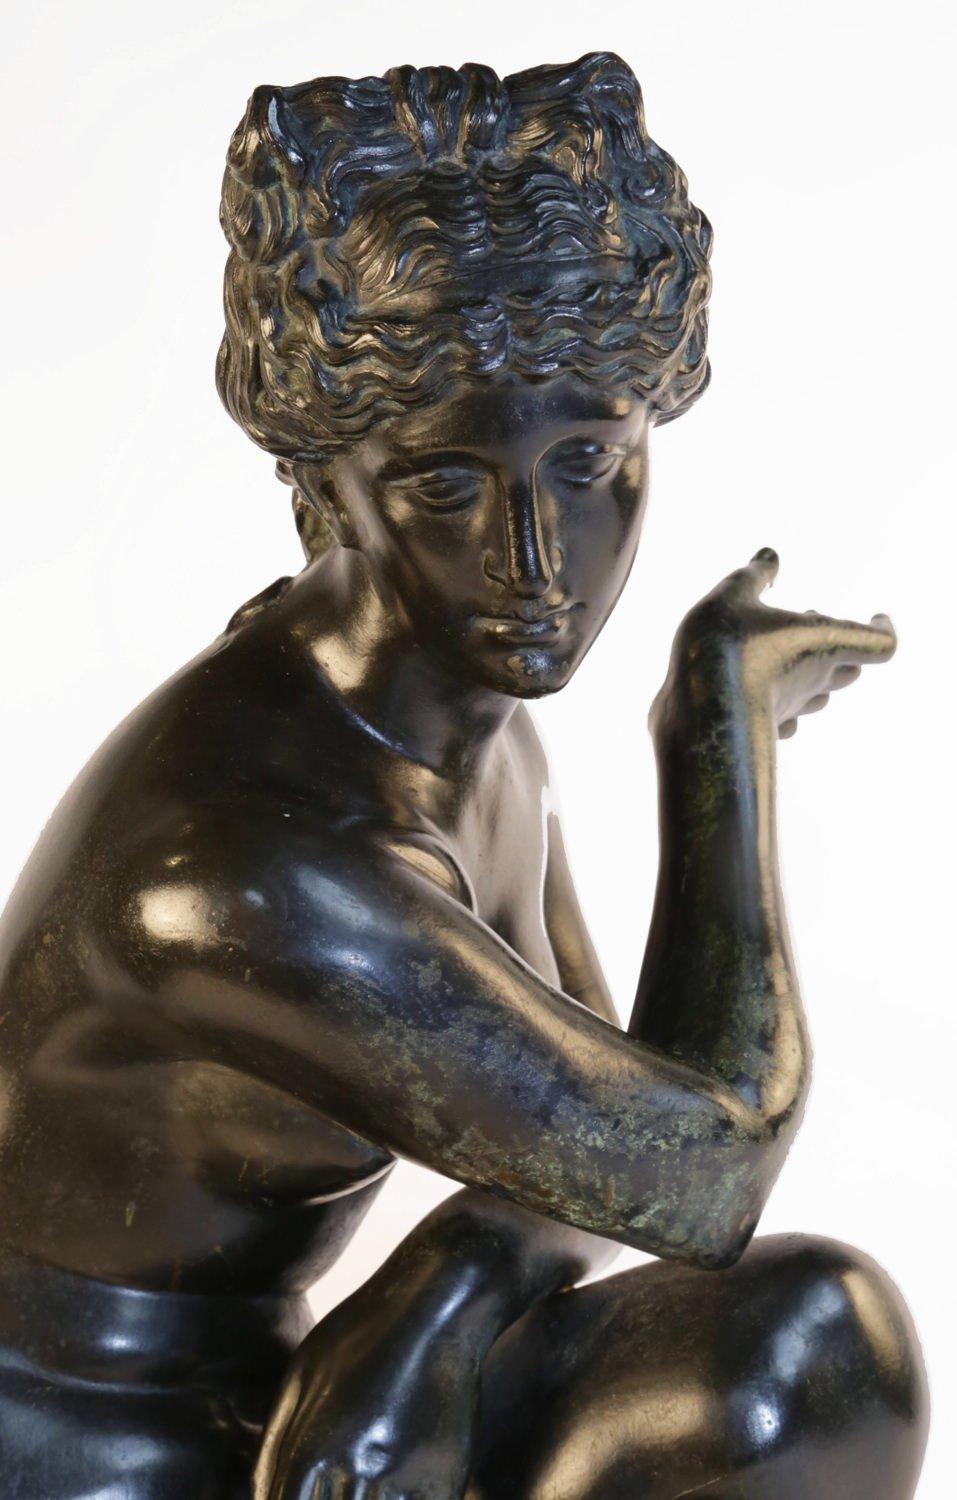 Figure en bronze du XIXe siècle représentant Vénus accroupie ou Aphrodite nue
Bronze à patine foncée
22,5 x 13 x 11 pouces

La Vénus accroupie est un modèle hellénistique de Vénus surprise à son bain. Vénus s'accroupit, le genou droit près du sol,